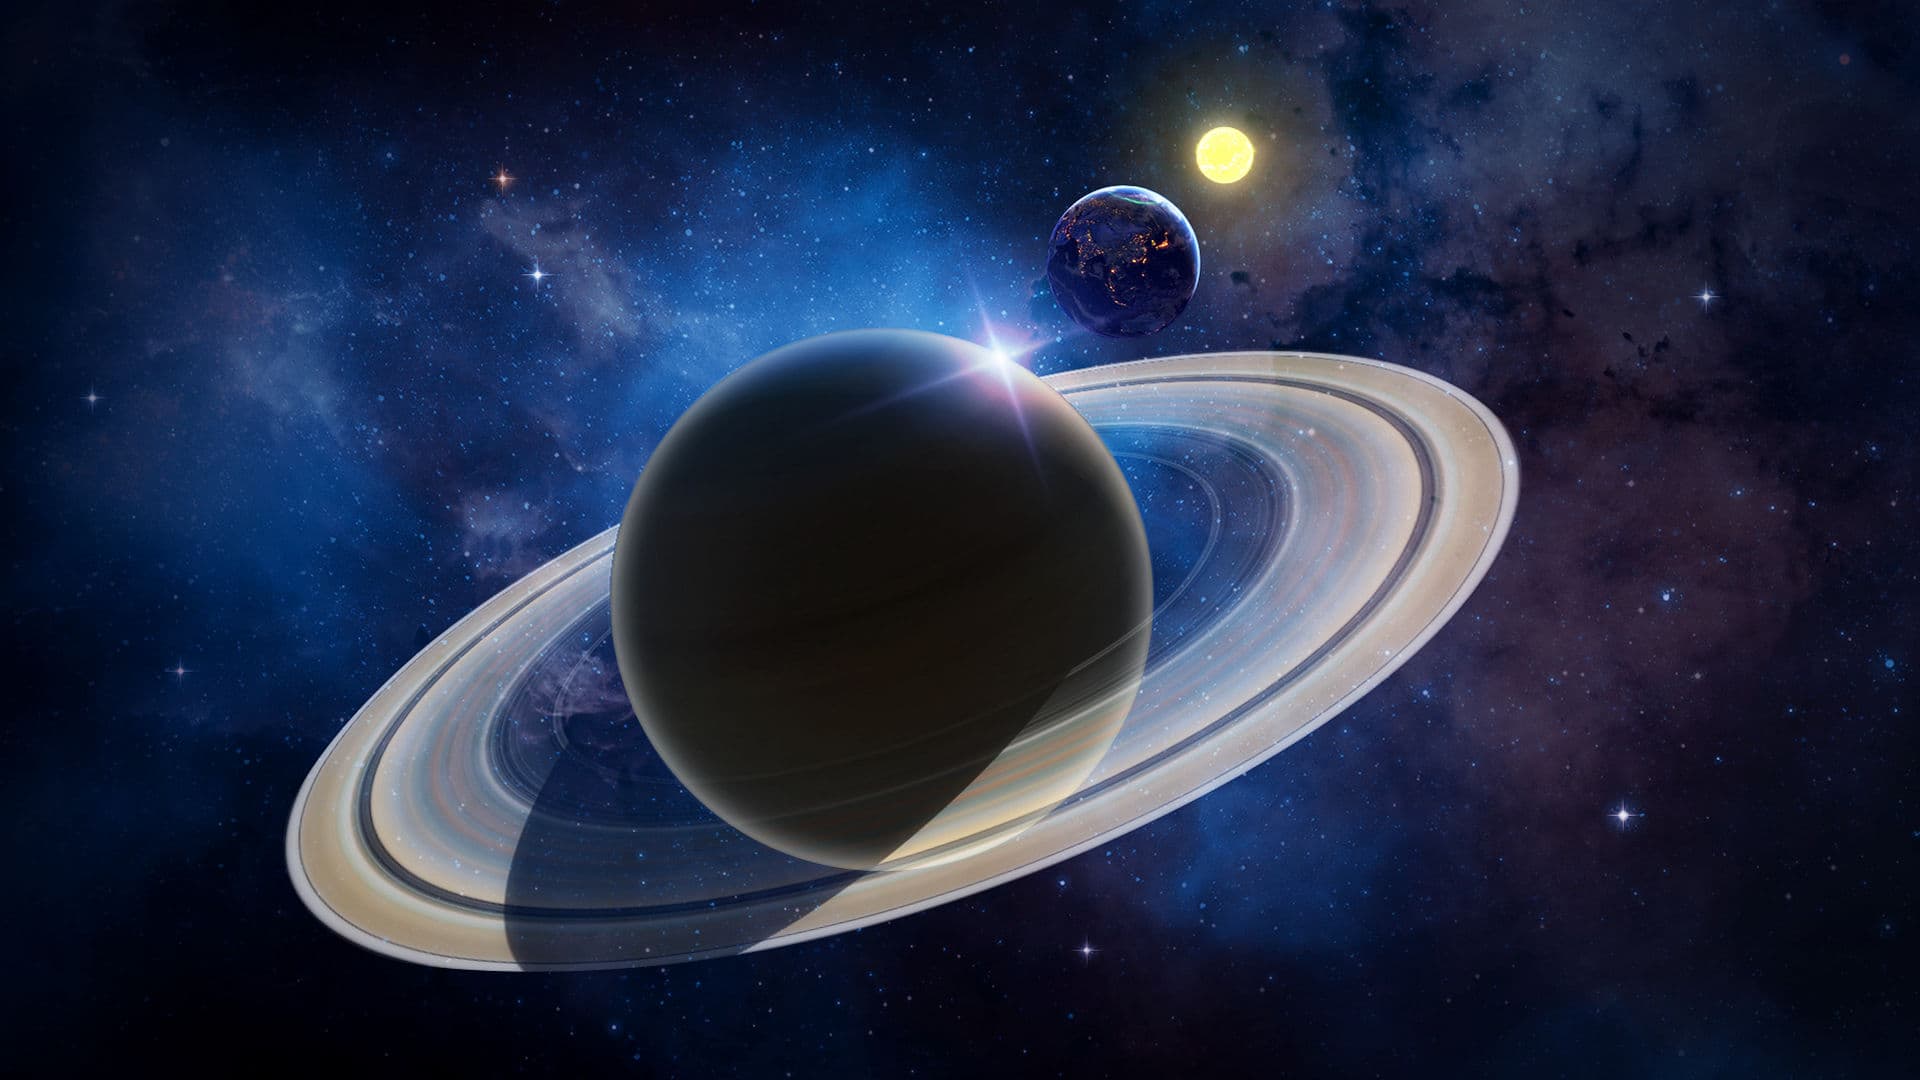 Saturne dans son opposition : profitez de ce moment rare !